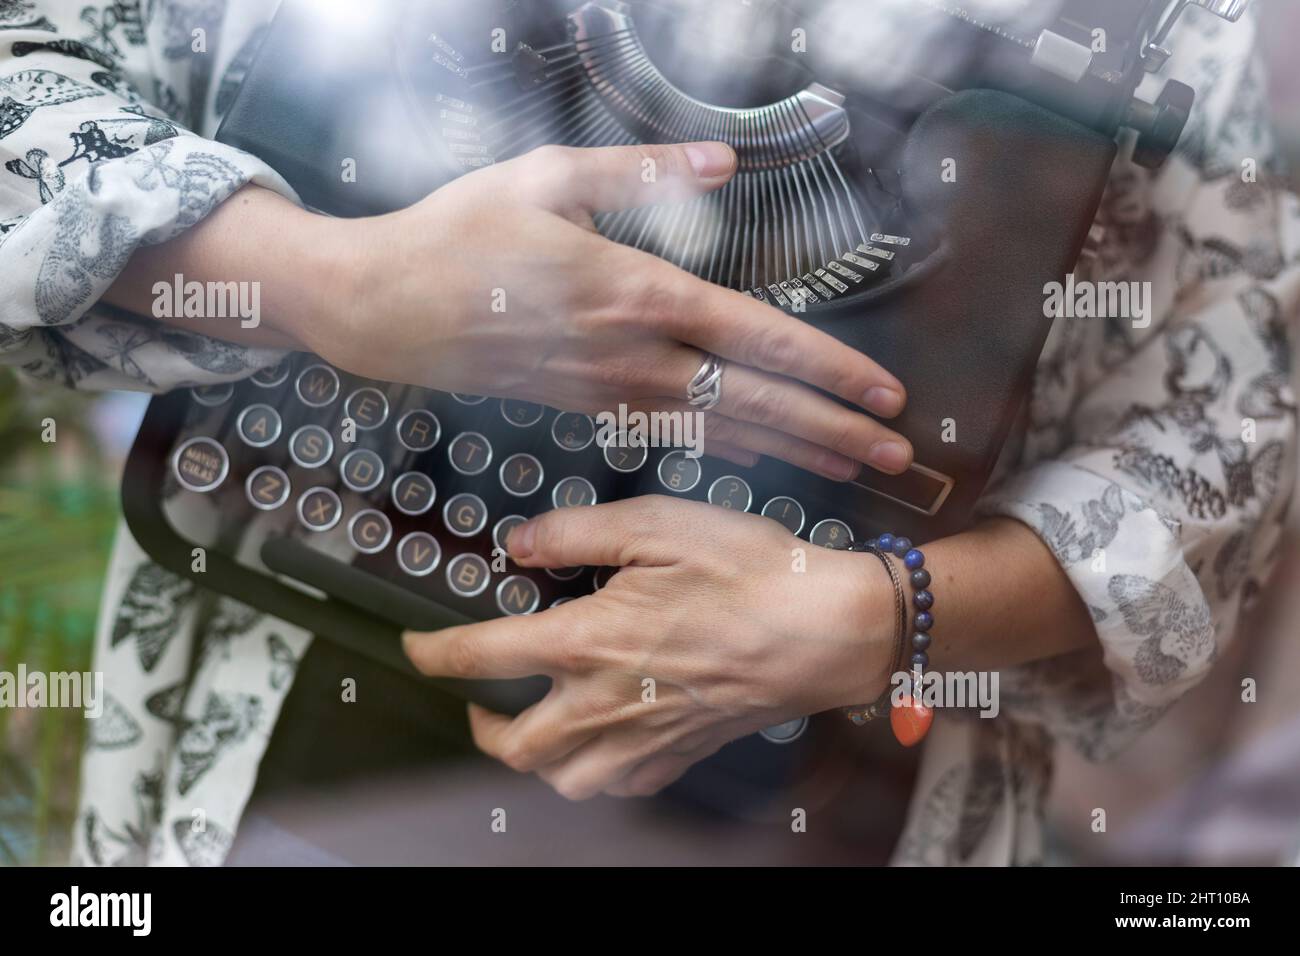 Primer plano de una persona irreconocible que abraza una máquina de escribir clásica. Concepto de pasión y amor por la escritura. Foto de stock